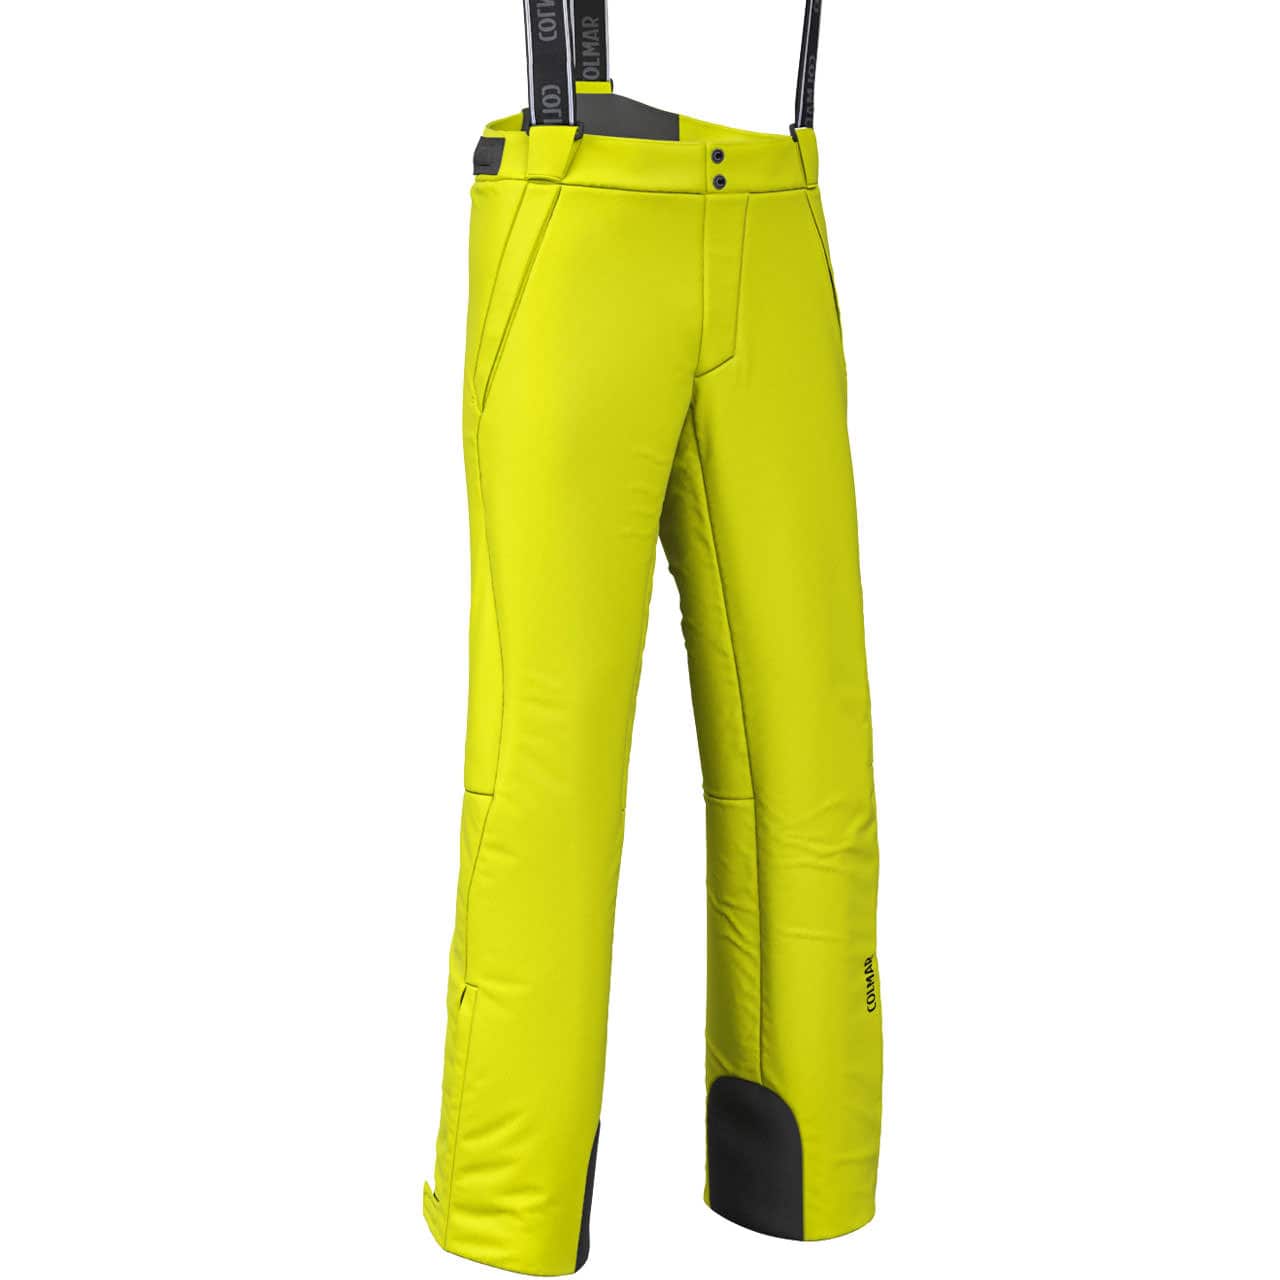 Colmar Ski Pants Men buy online in the Ski Shop